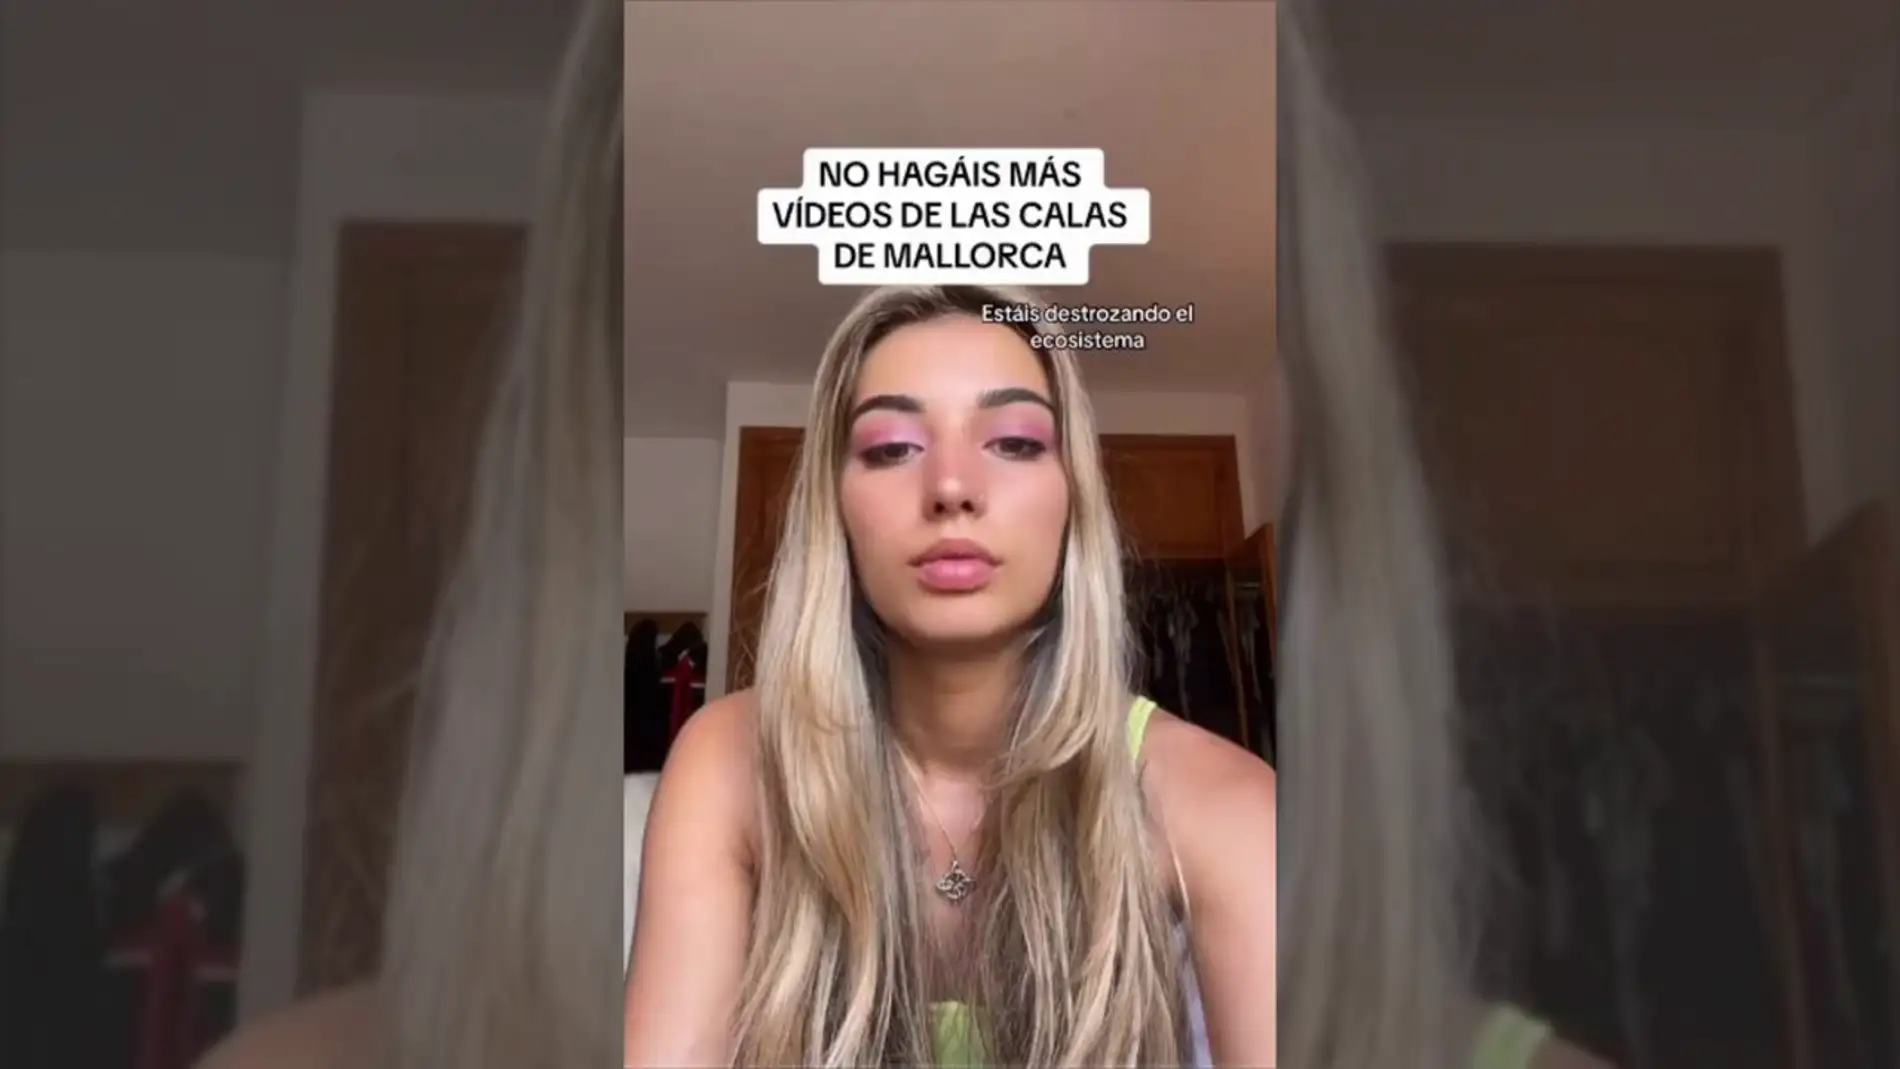 Una joven pide en TikTok que no hagan más vídeos de las calas en Mallorca: "Estáis destrozando el ecosistema"